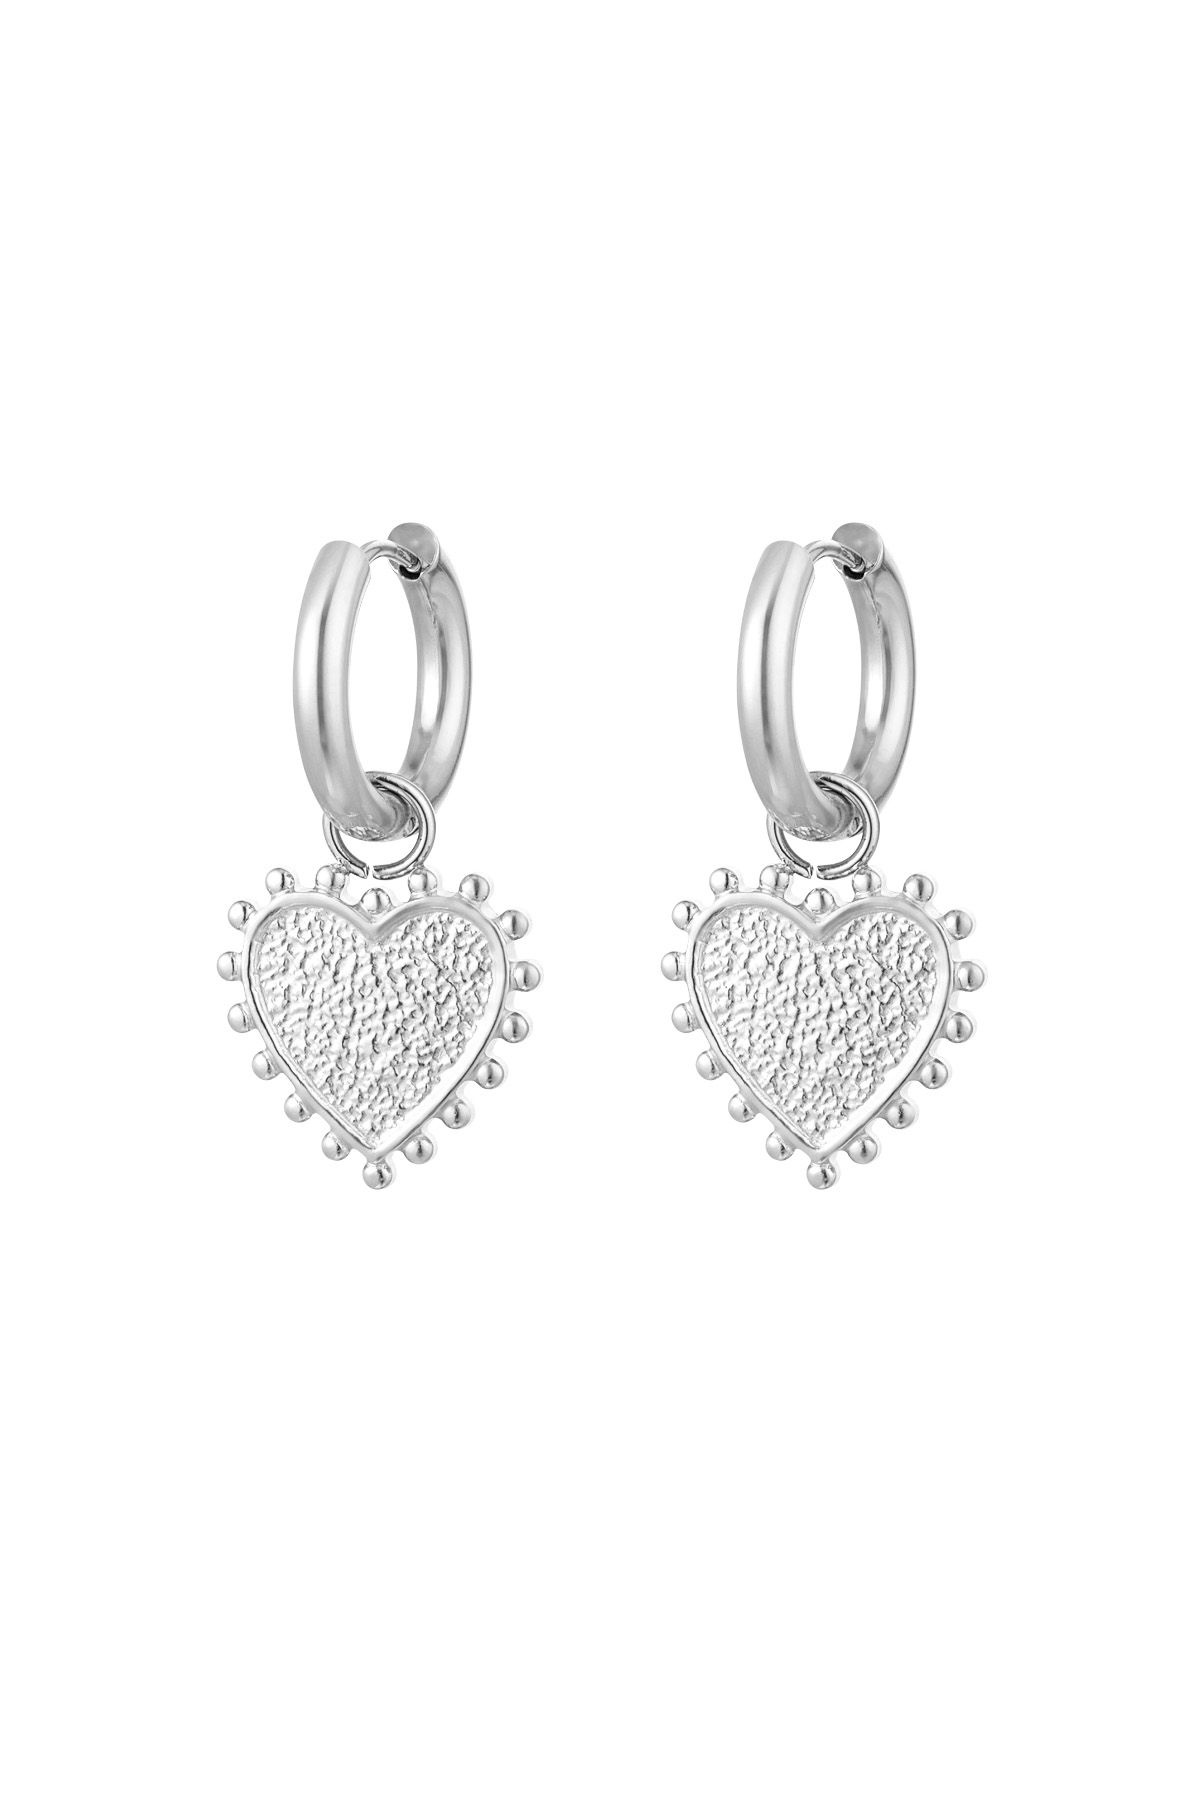 Kalp şeklinde dekore edilmiş küpeler - gümüş 